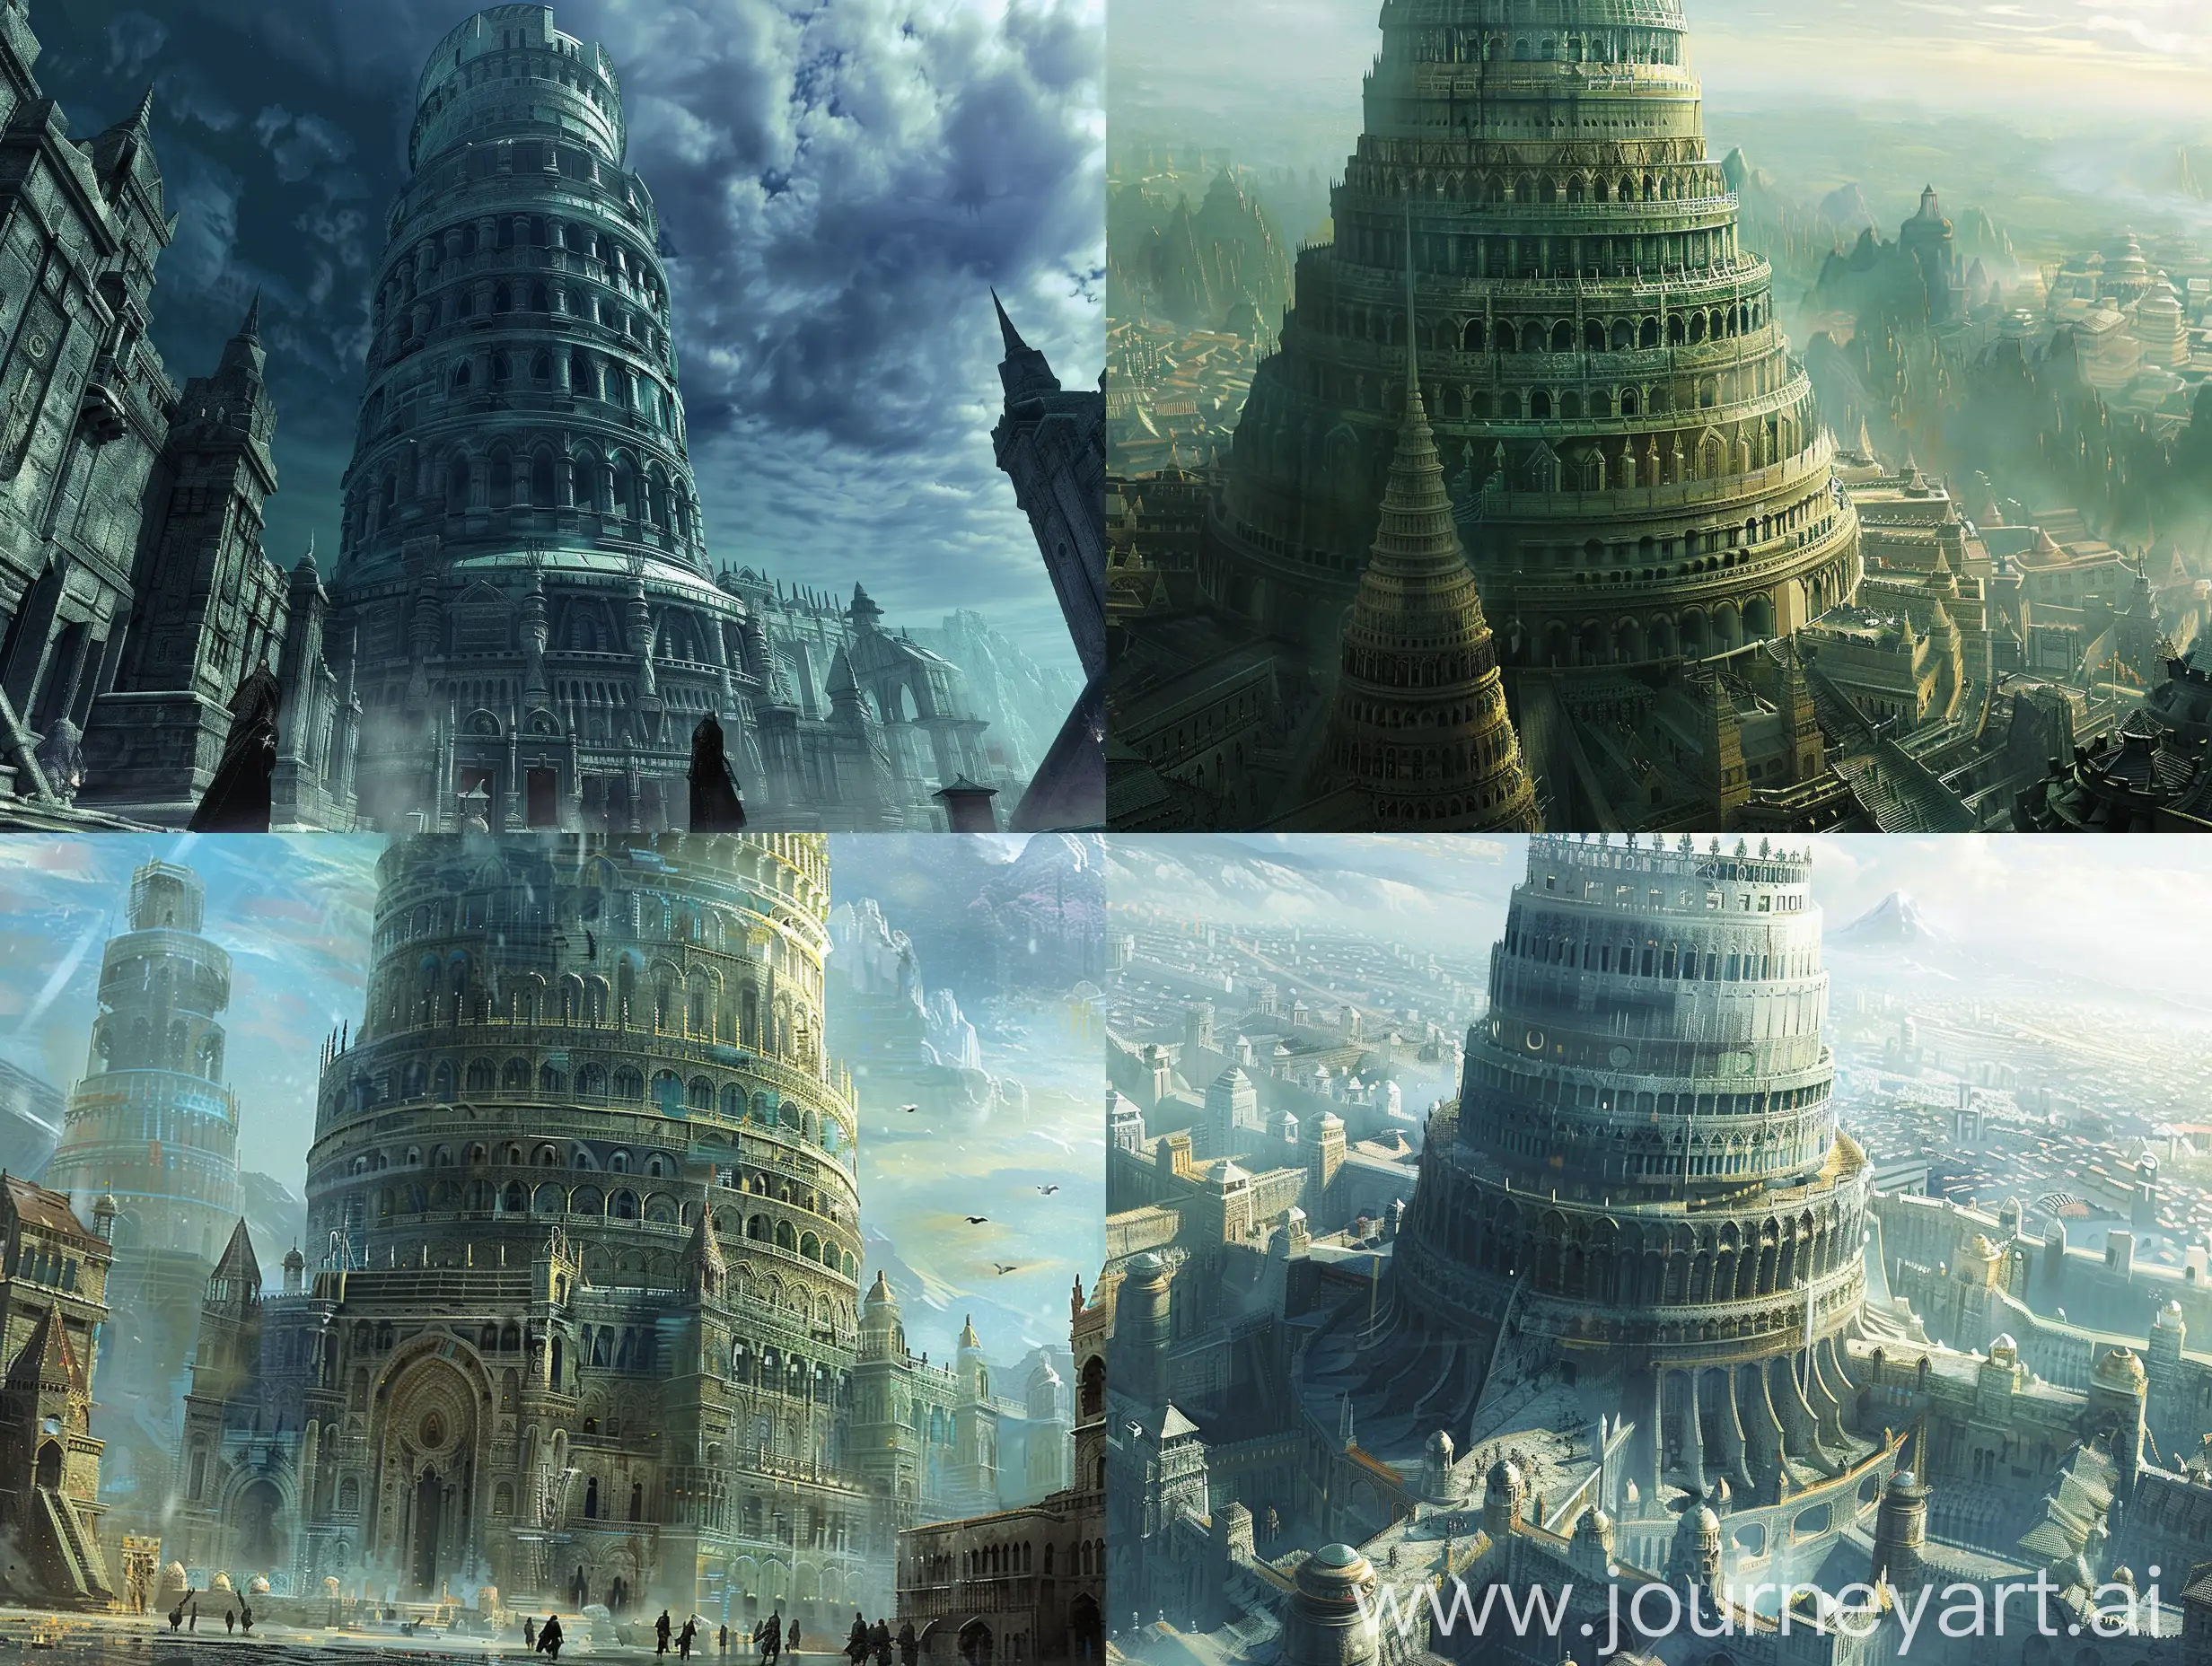 огромная, очень высокая башня, в архитектуре соединяет множество стилей в одном строении. круглая. Стоит в большом городе, там же расположен храм Ордена Первозданного Света.

Тёмное Фэнтези.